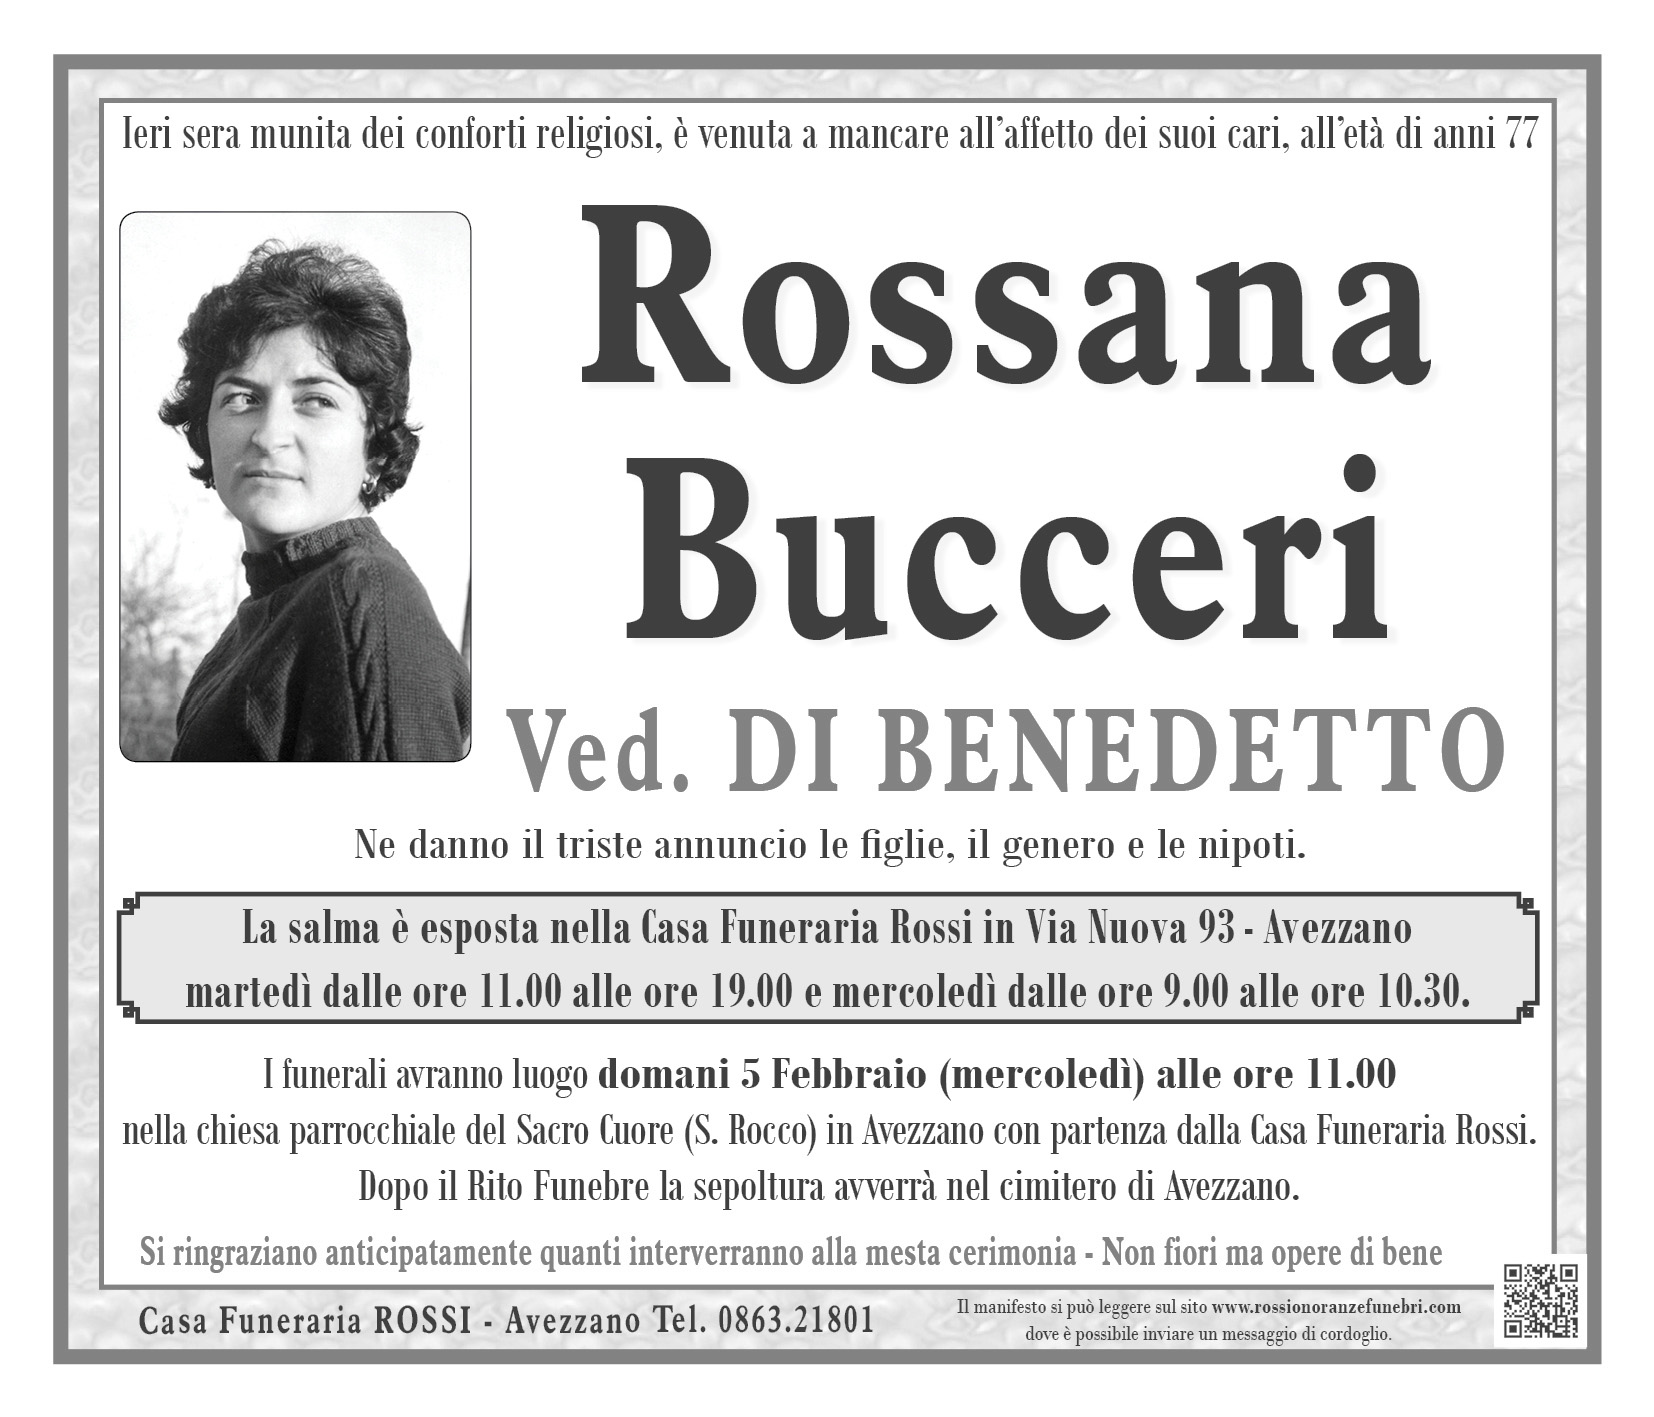 Rossana Bucceri